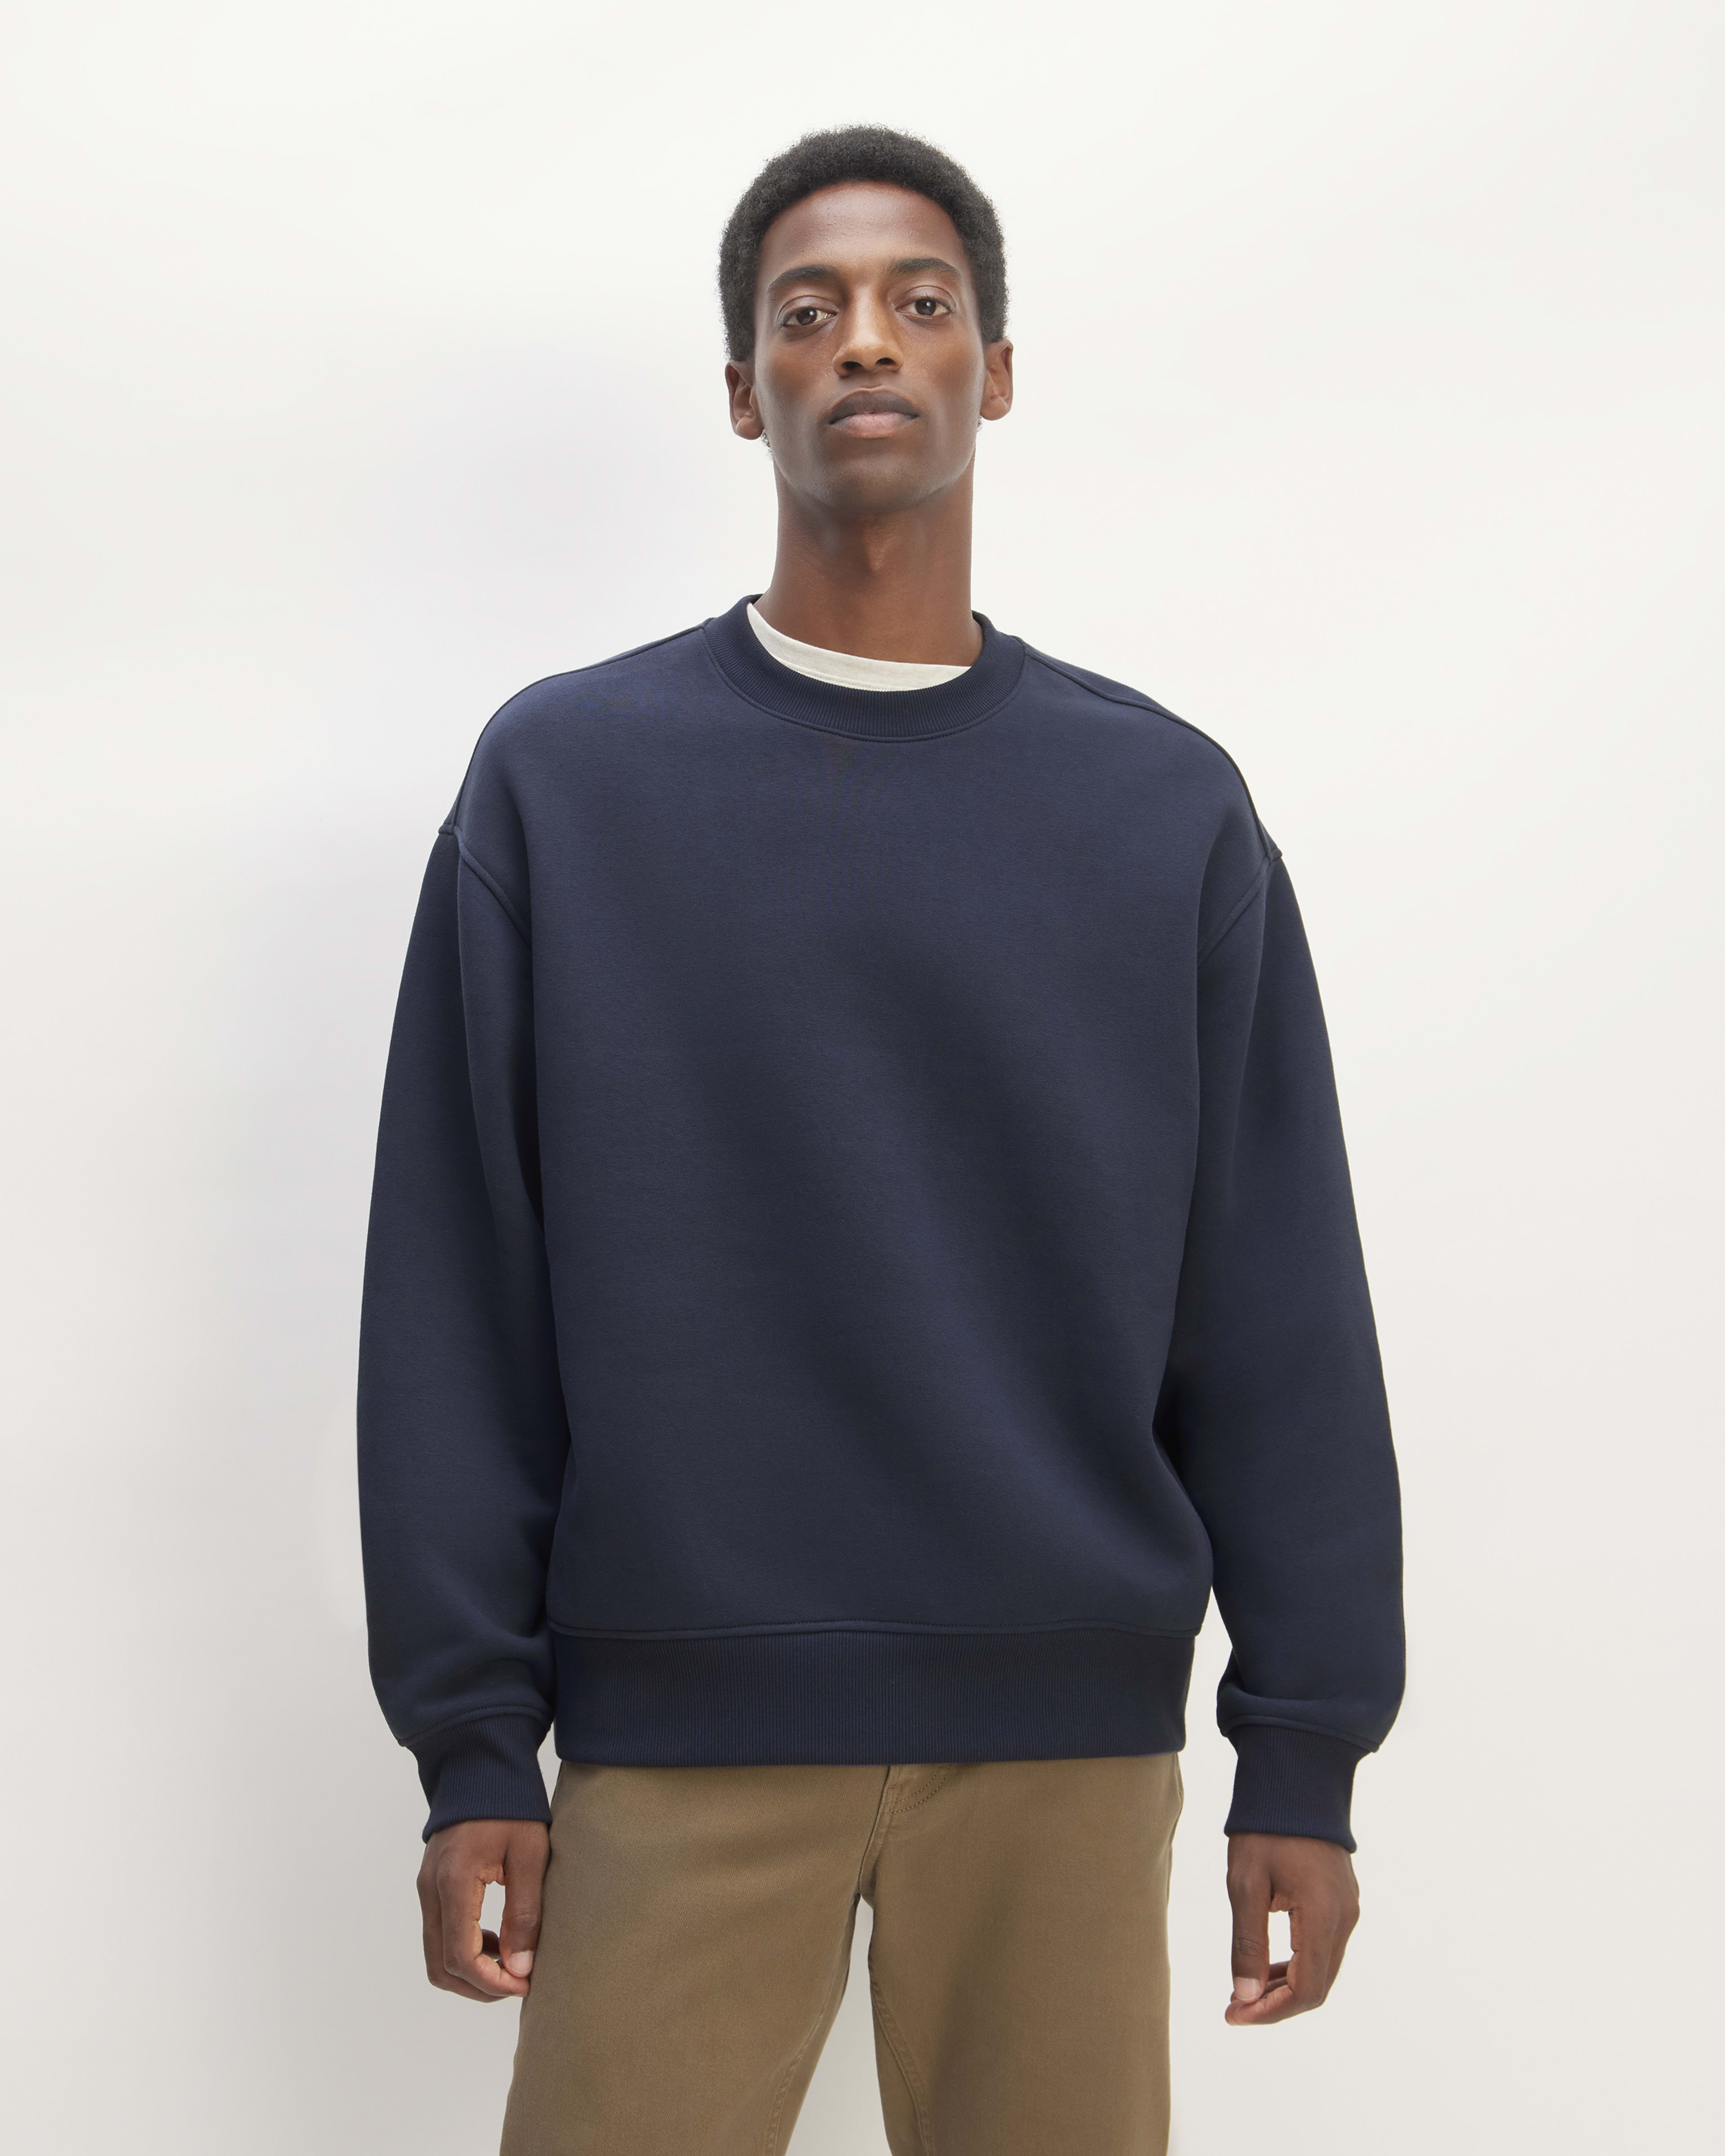 Men's Hoodies & Sweatshirts – Everlane